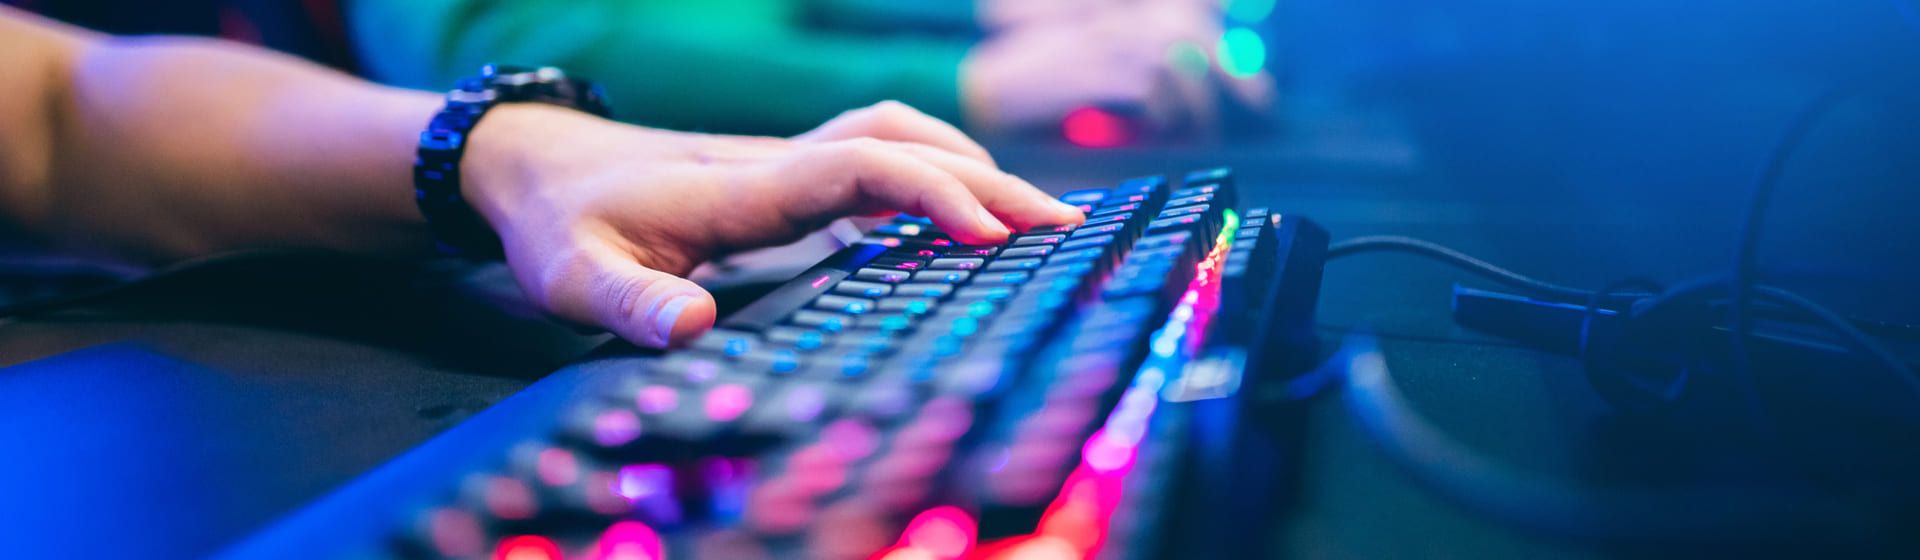 Capa do post: Melhor teclado gamer em 2021: 10 modelos para comprar